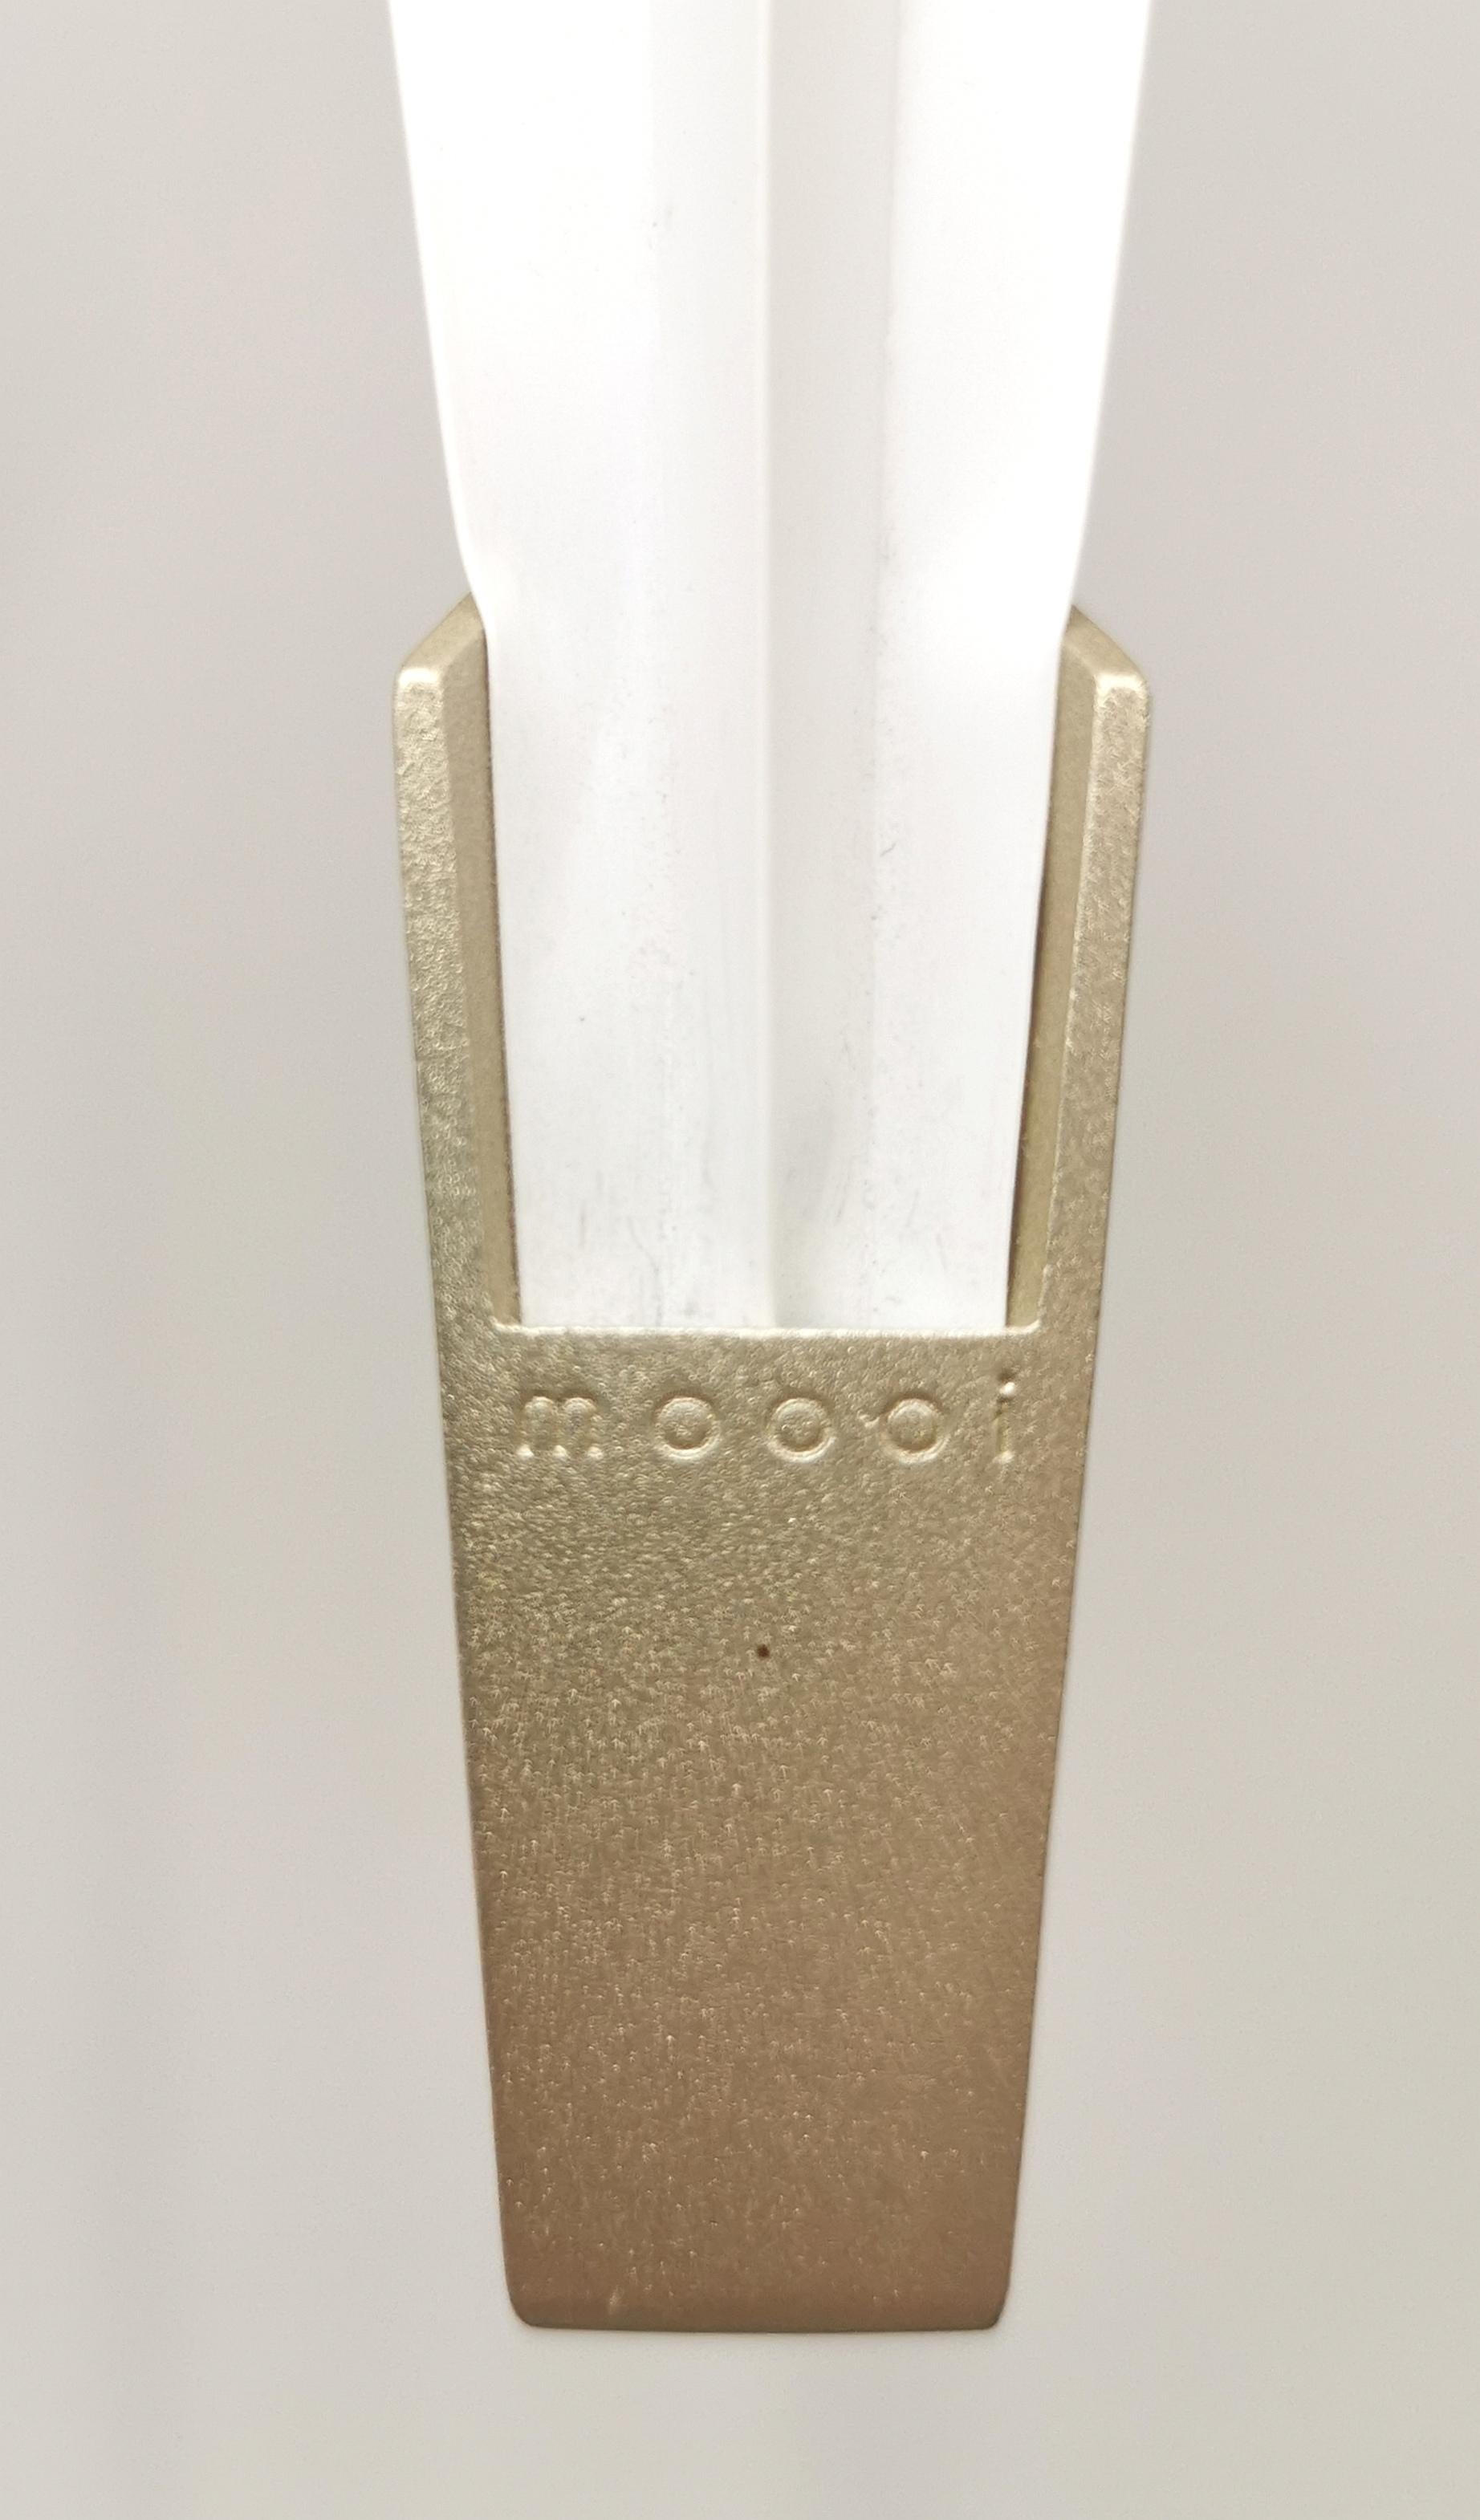 Dutch Modern Floor Lamp by Moooi Perch Light Golden Metal White Holland Design